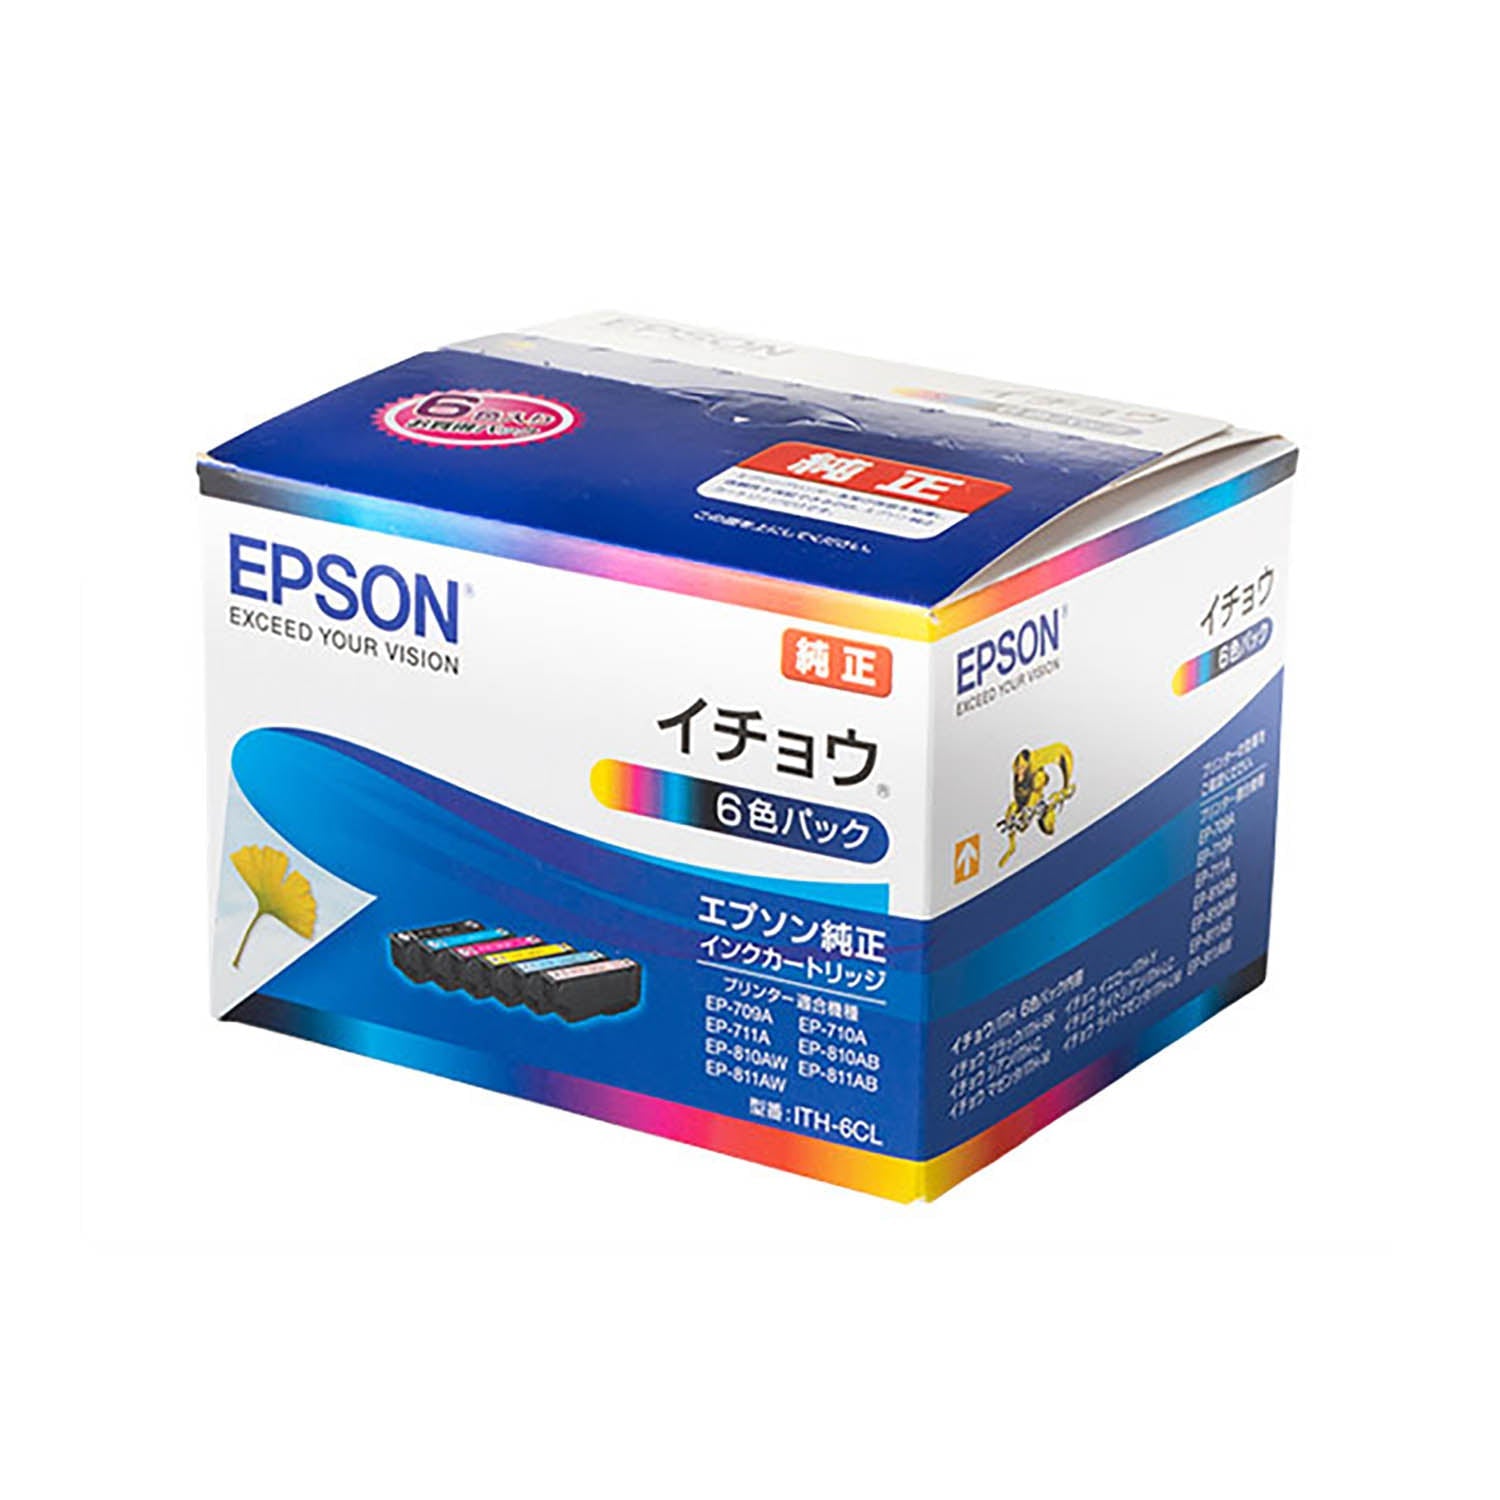 エプソン用 ITH-6CL (イチョウ)  互換インク 6色セット